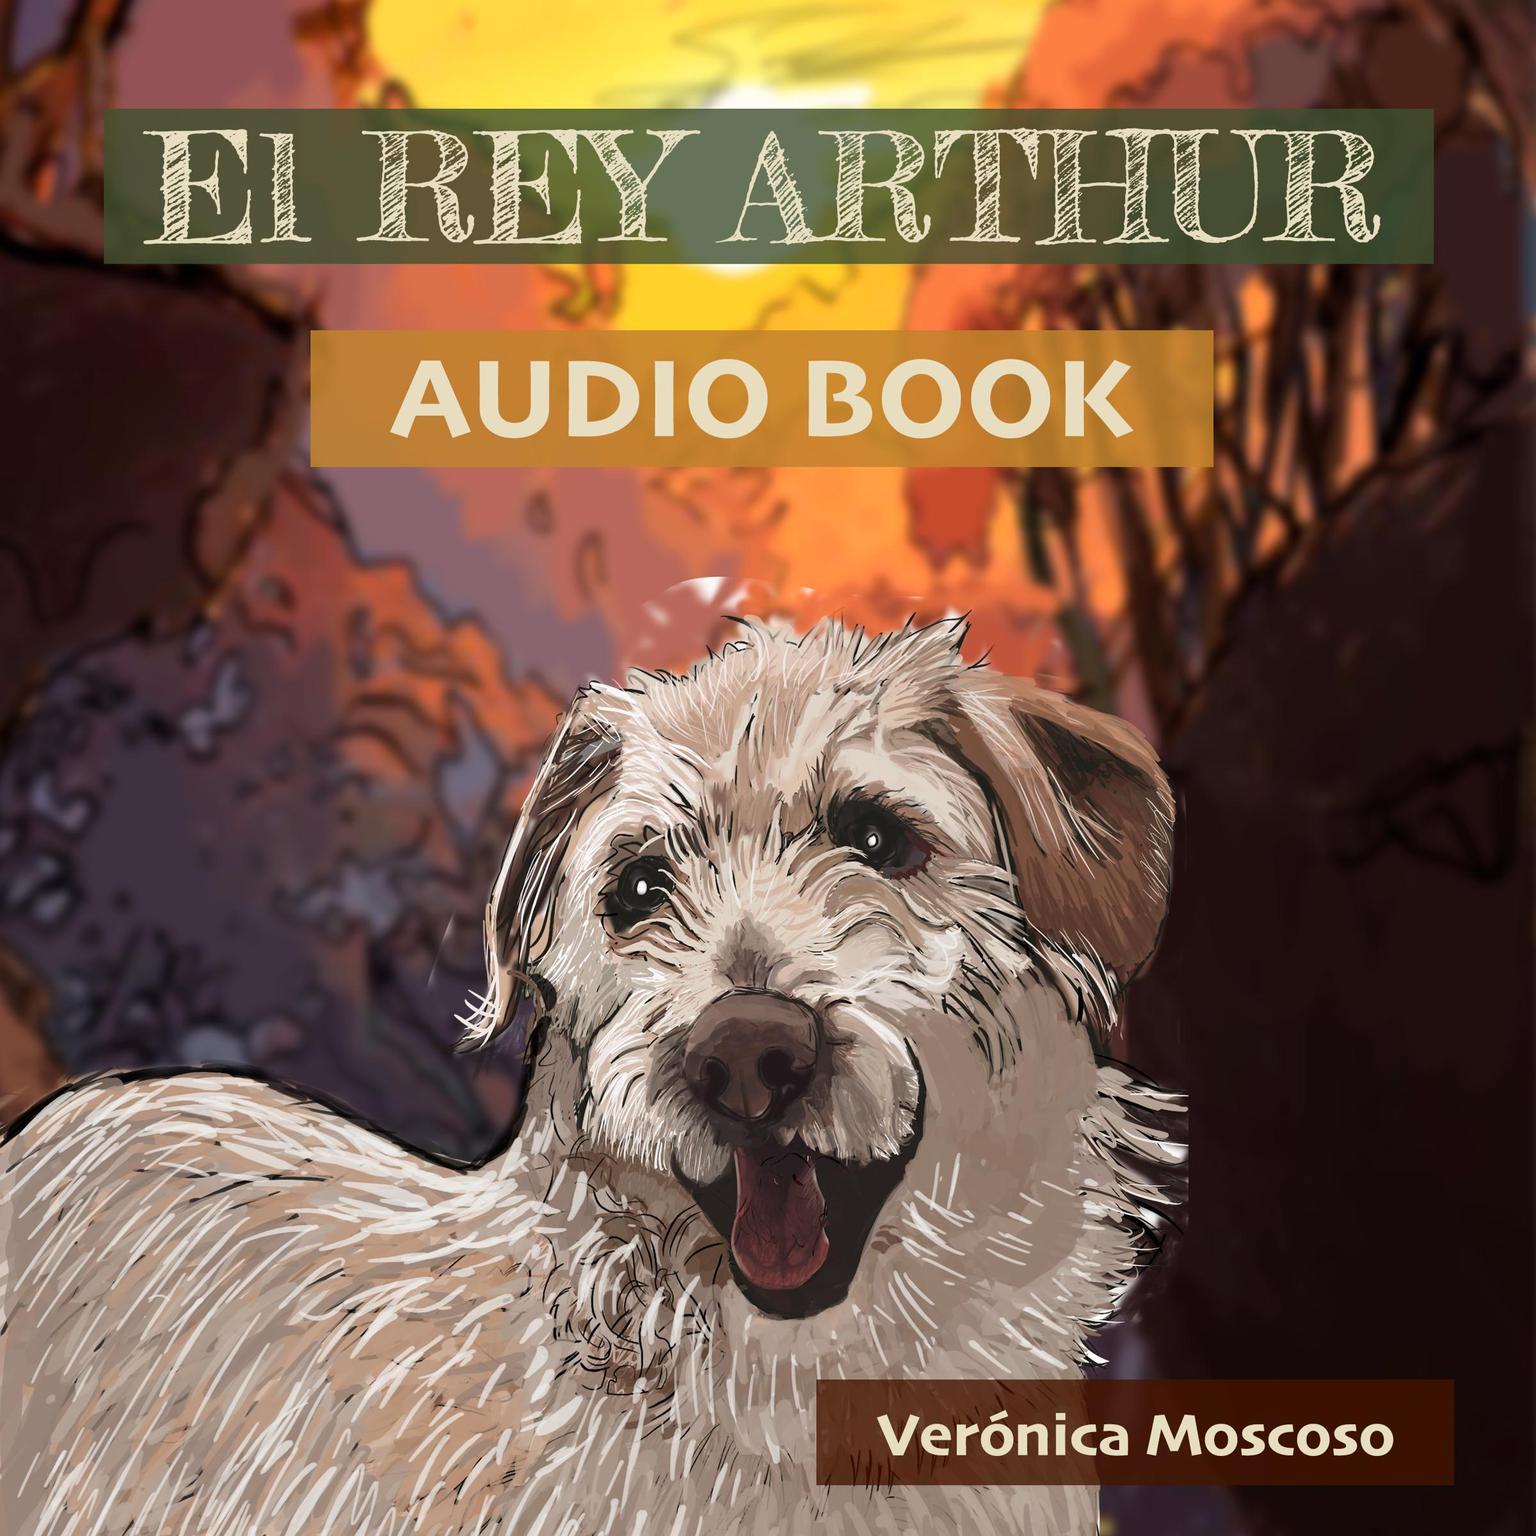 El Rey Arthur Audiobook, by Veronica Moscoso